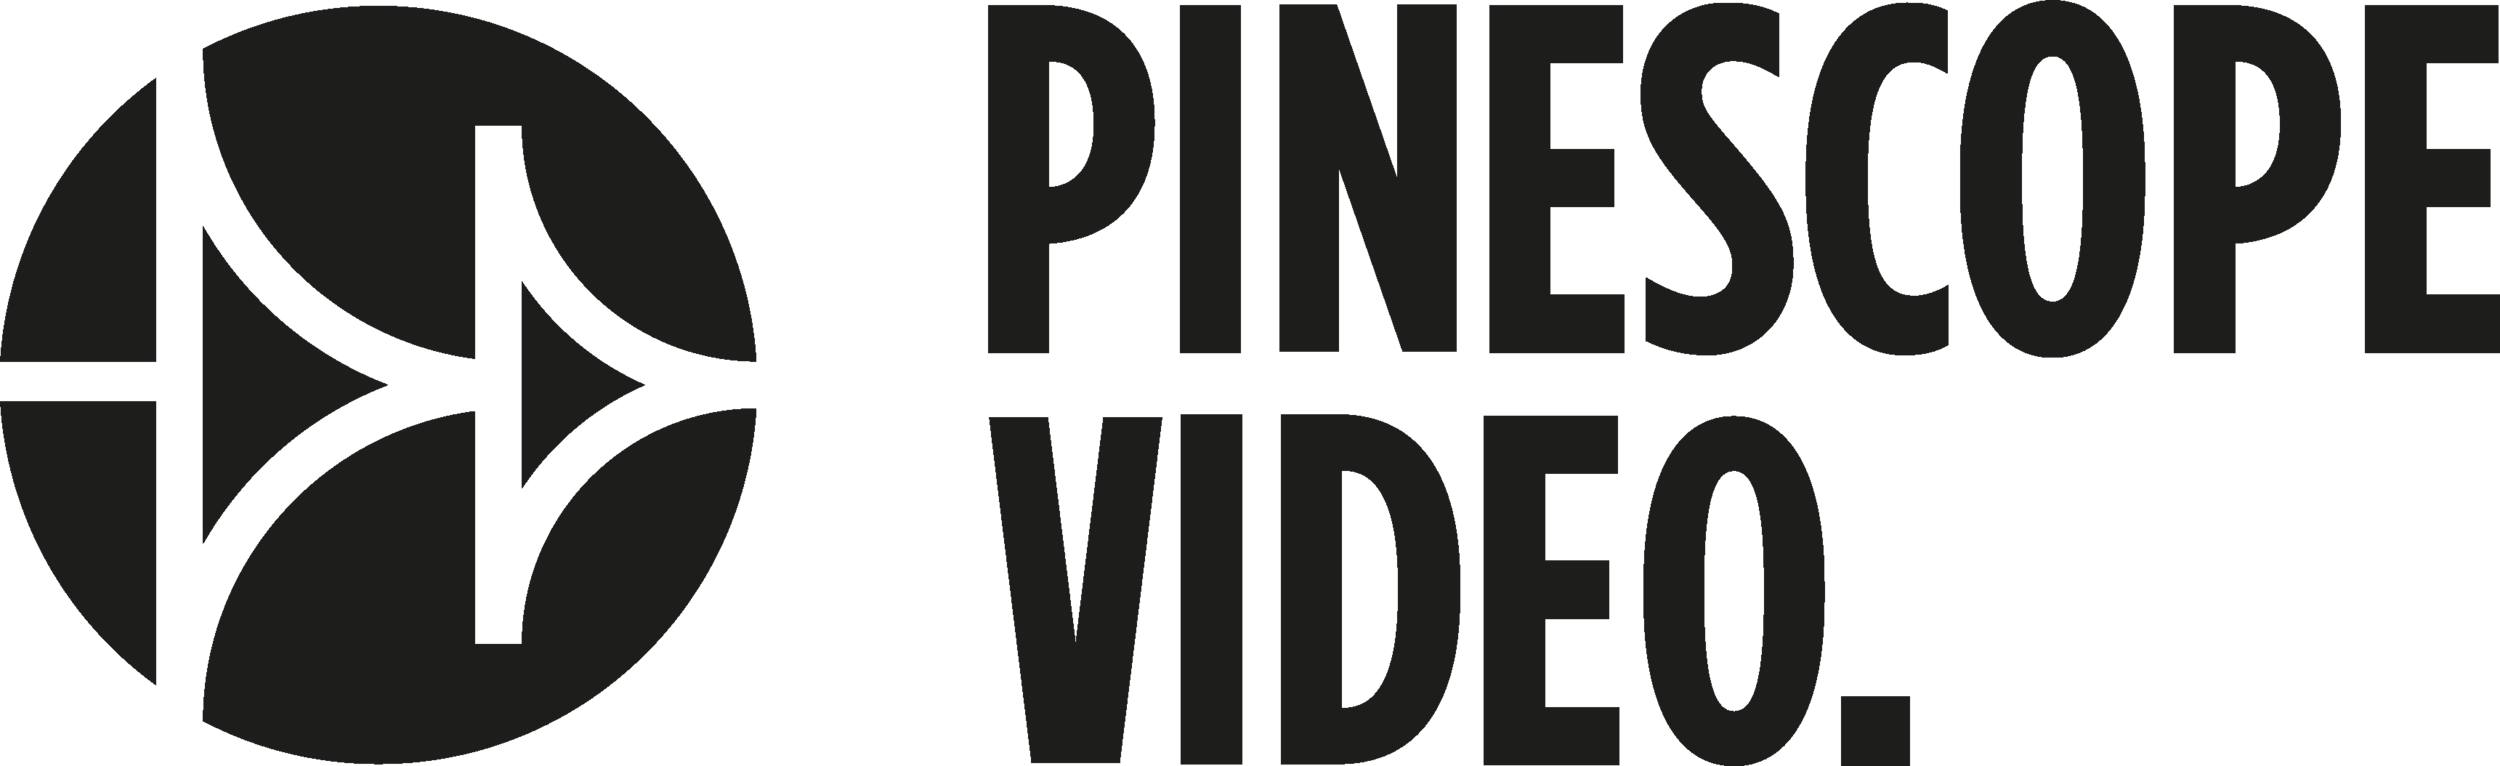 Pinescope Video